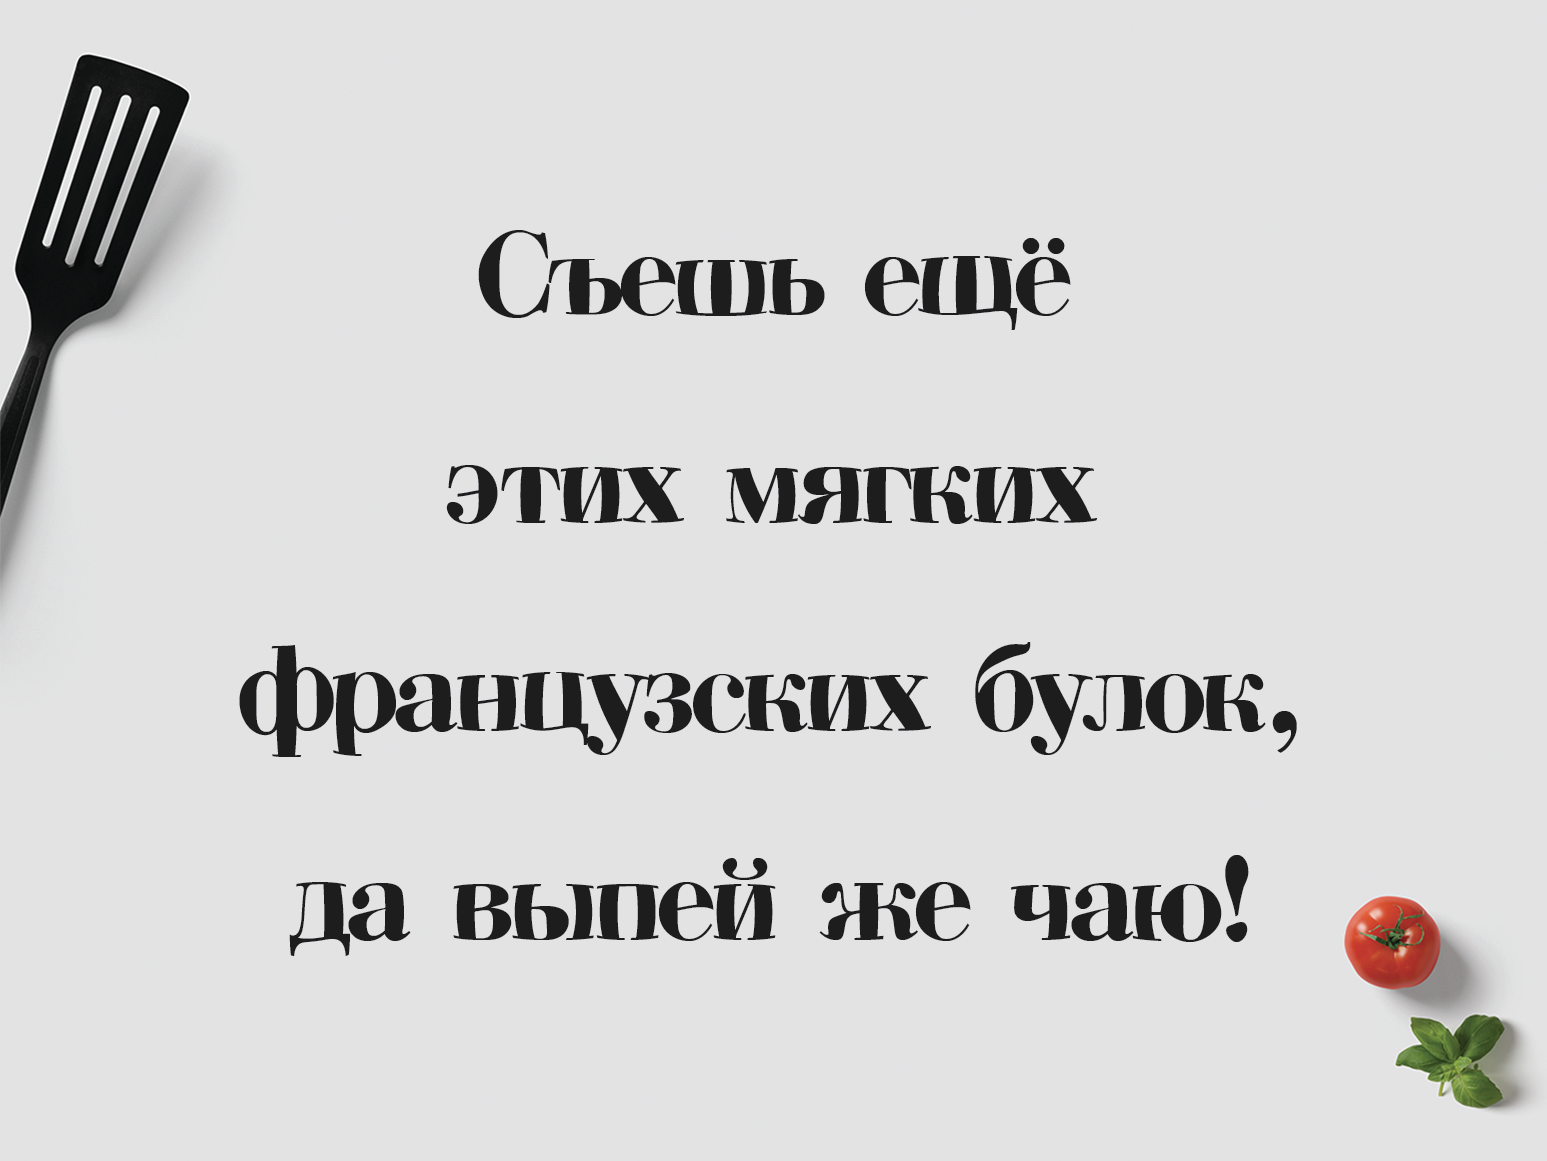 Pelmeshka Free Font - serif